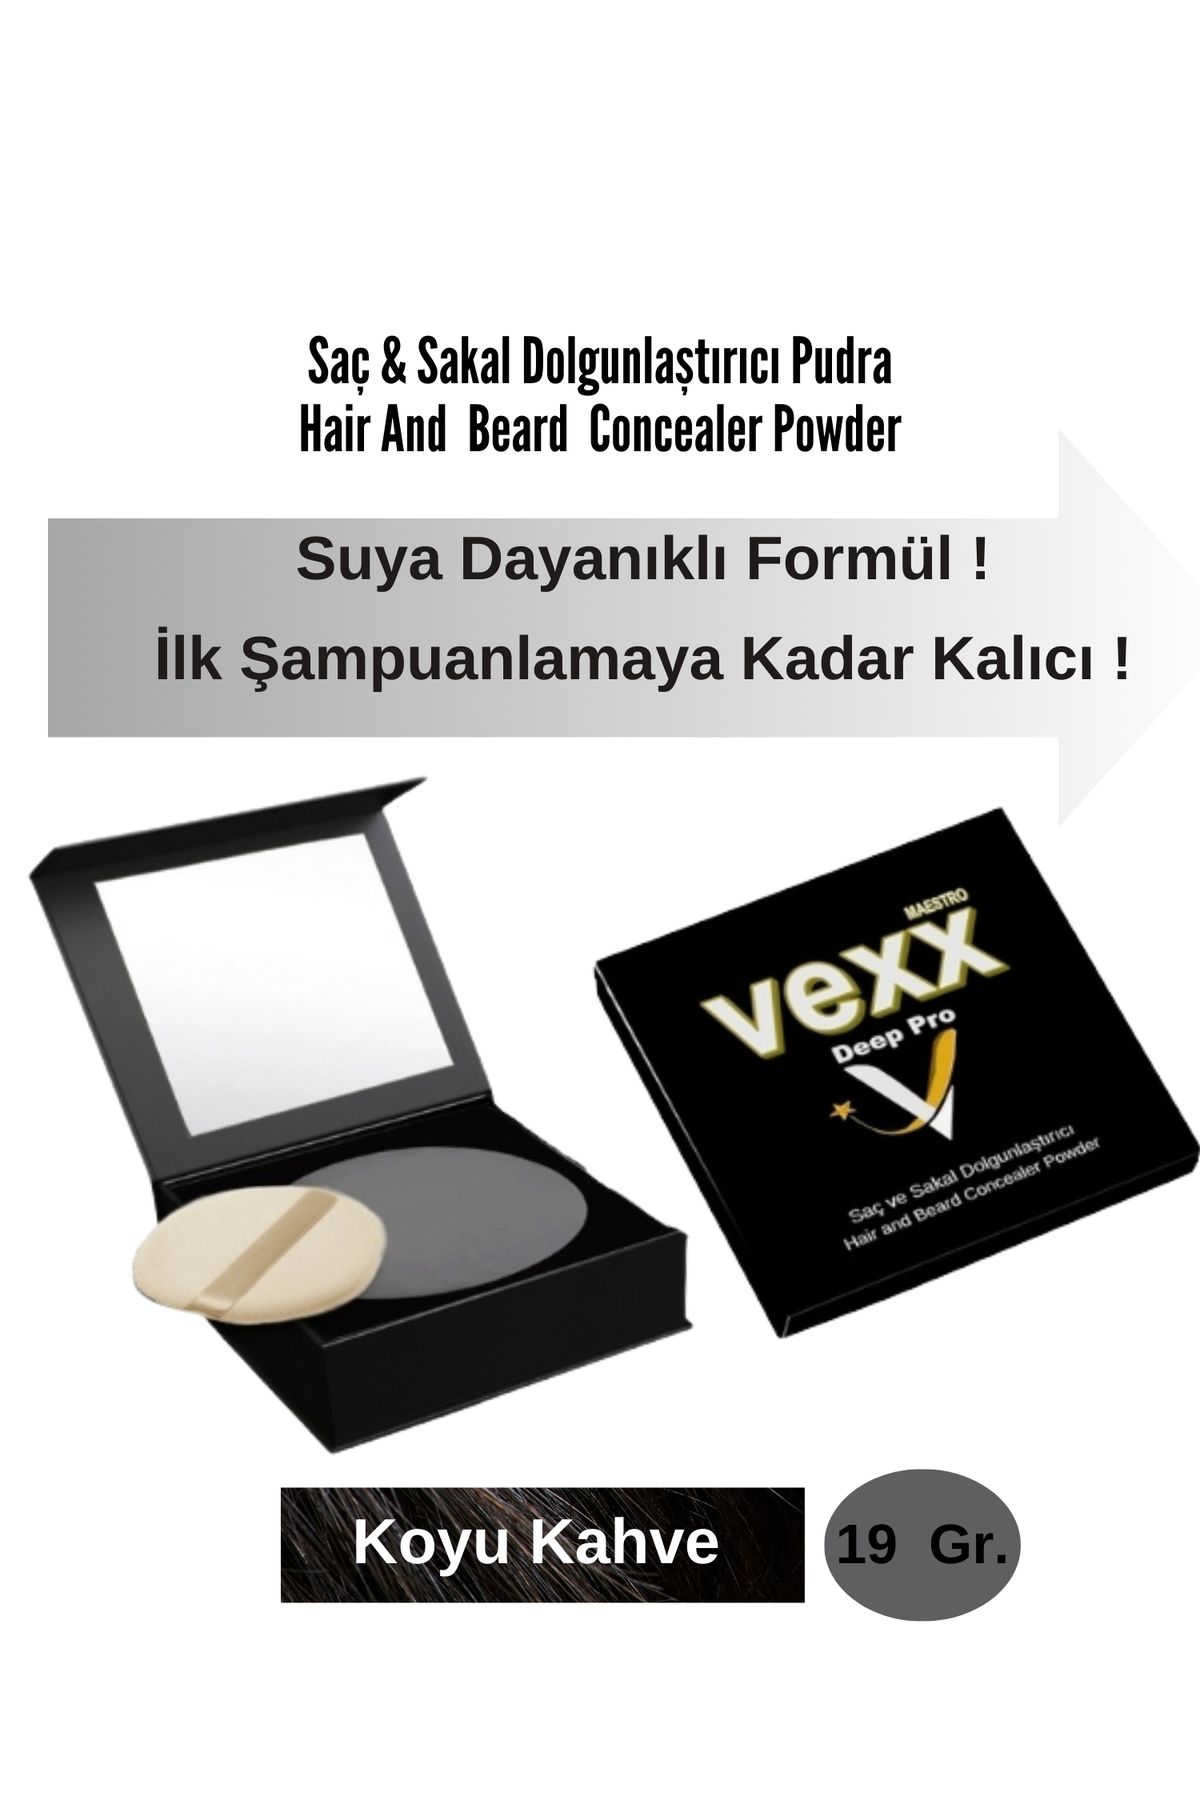 vexx maestro Vexx Deep Pro Saç & Sakal Dolgunlaştırıcı Pudra Topik (Suya Dayanıklı) Doğal İçerikli,Yerli Üretim